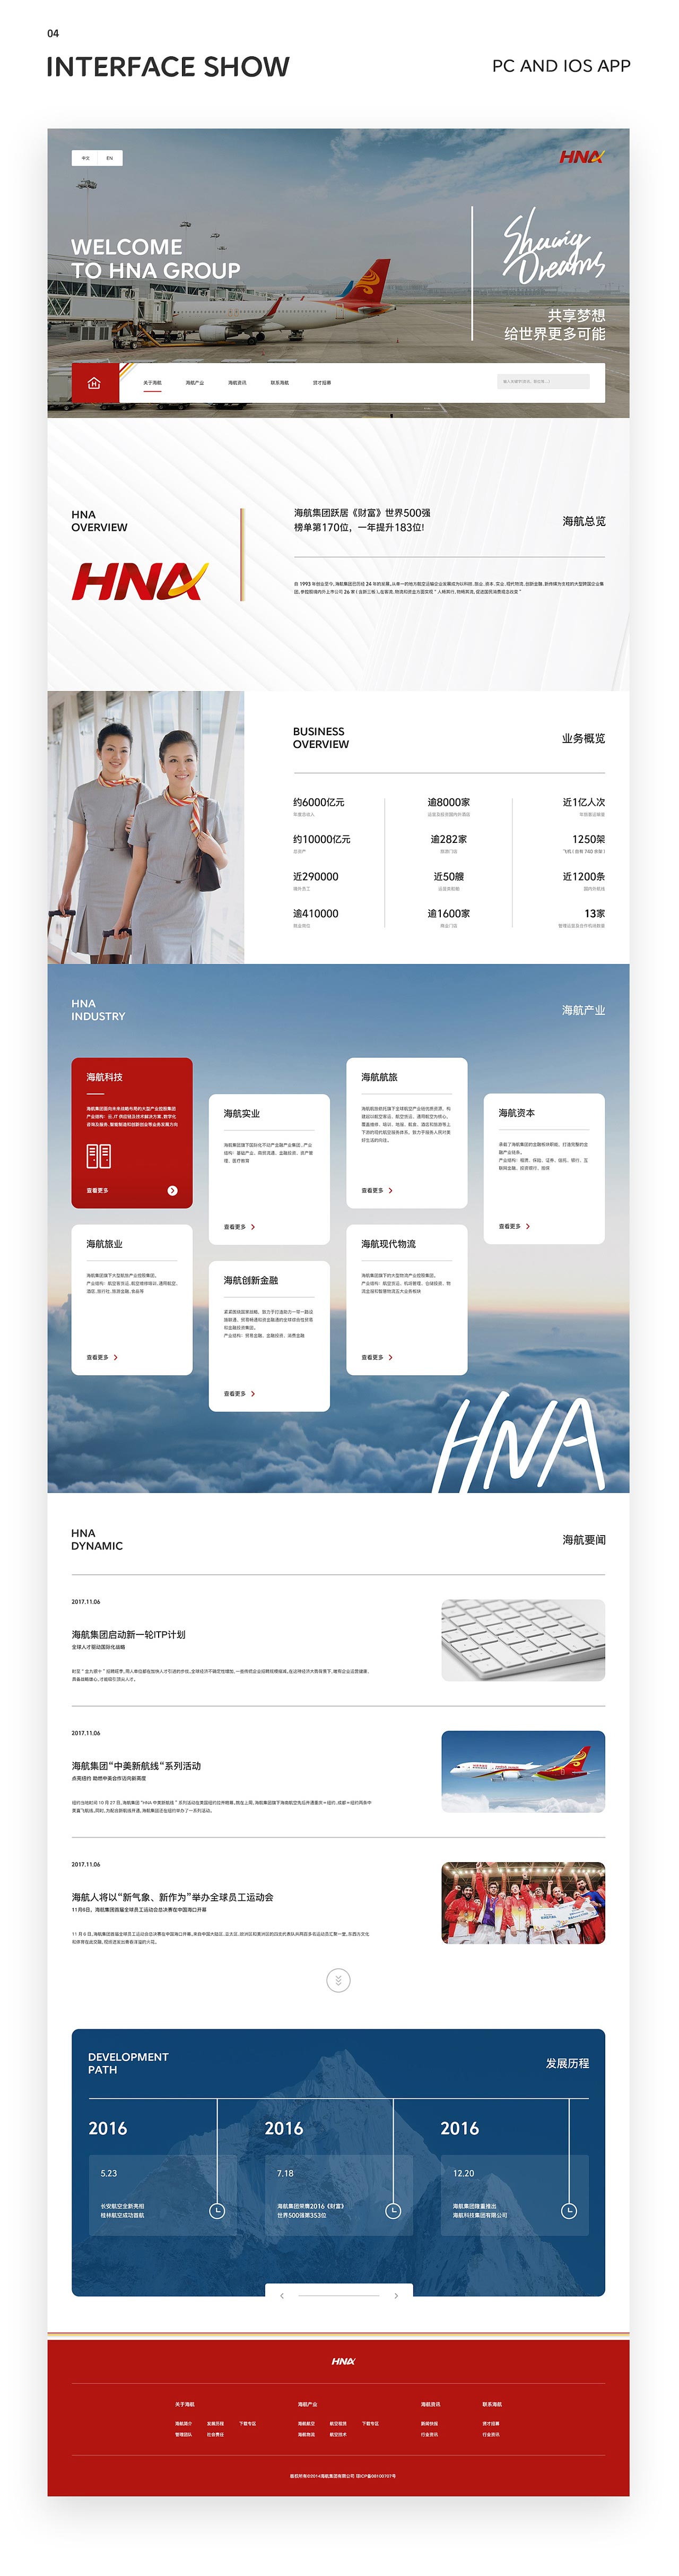 海航官网+海南航空App主视觉风格概念设计（psd）插图(1)